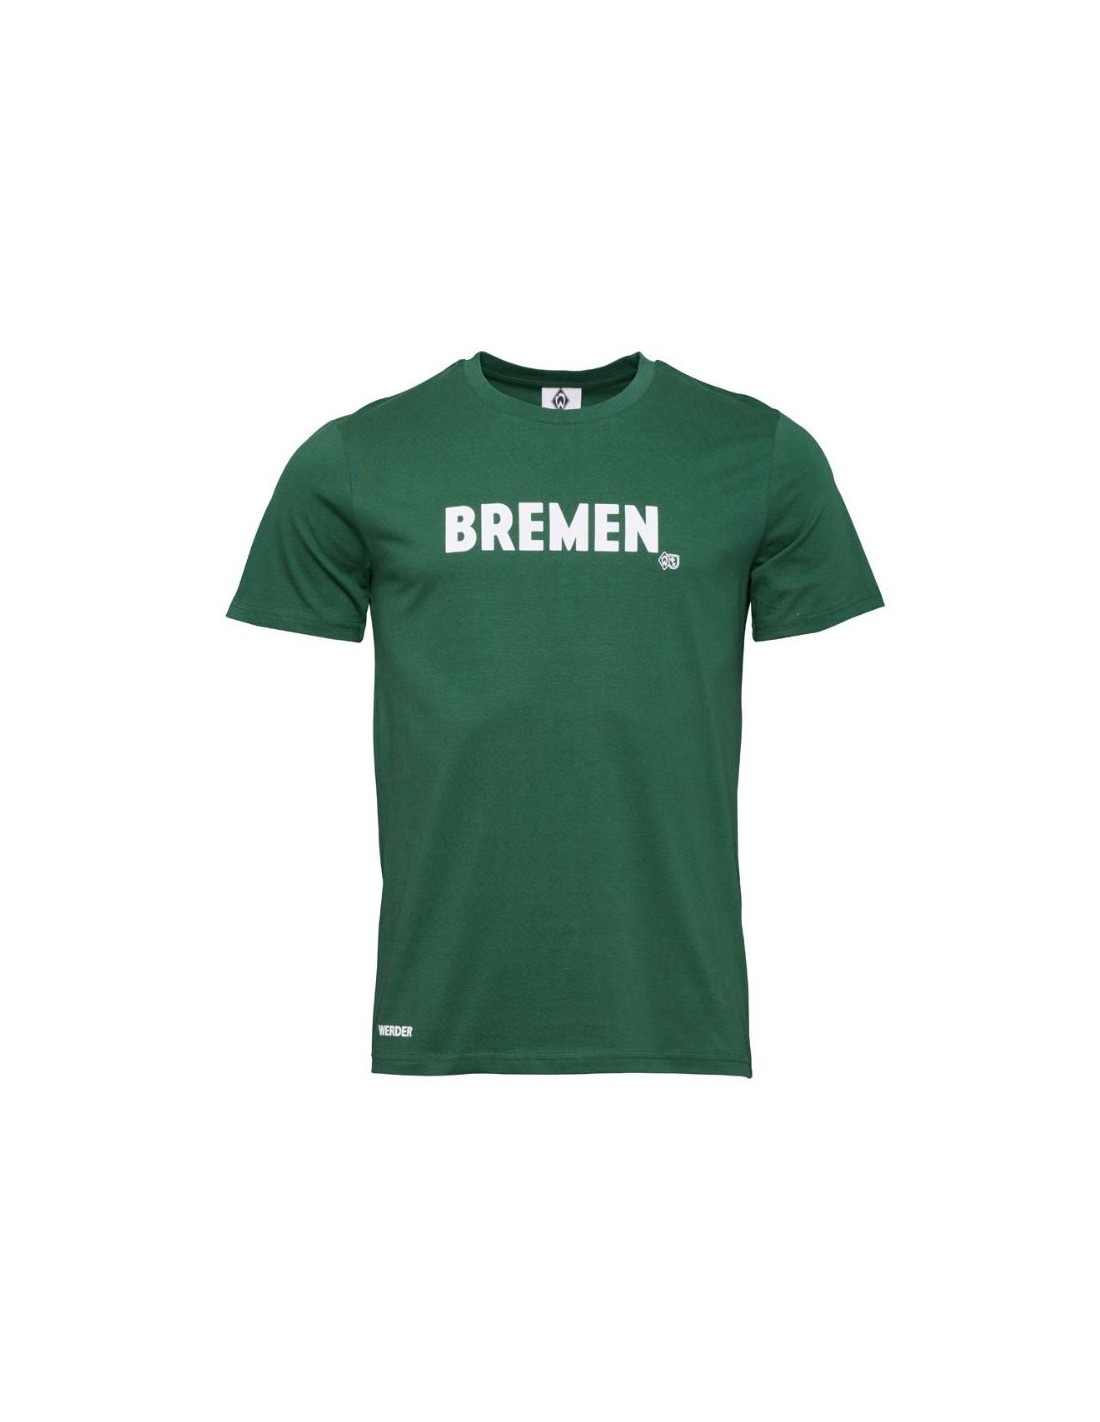 SV Werder Bremen - T-Shirt "BREMEN" - grün